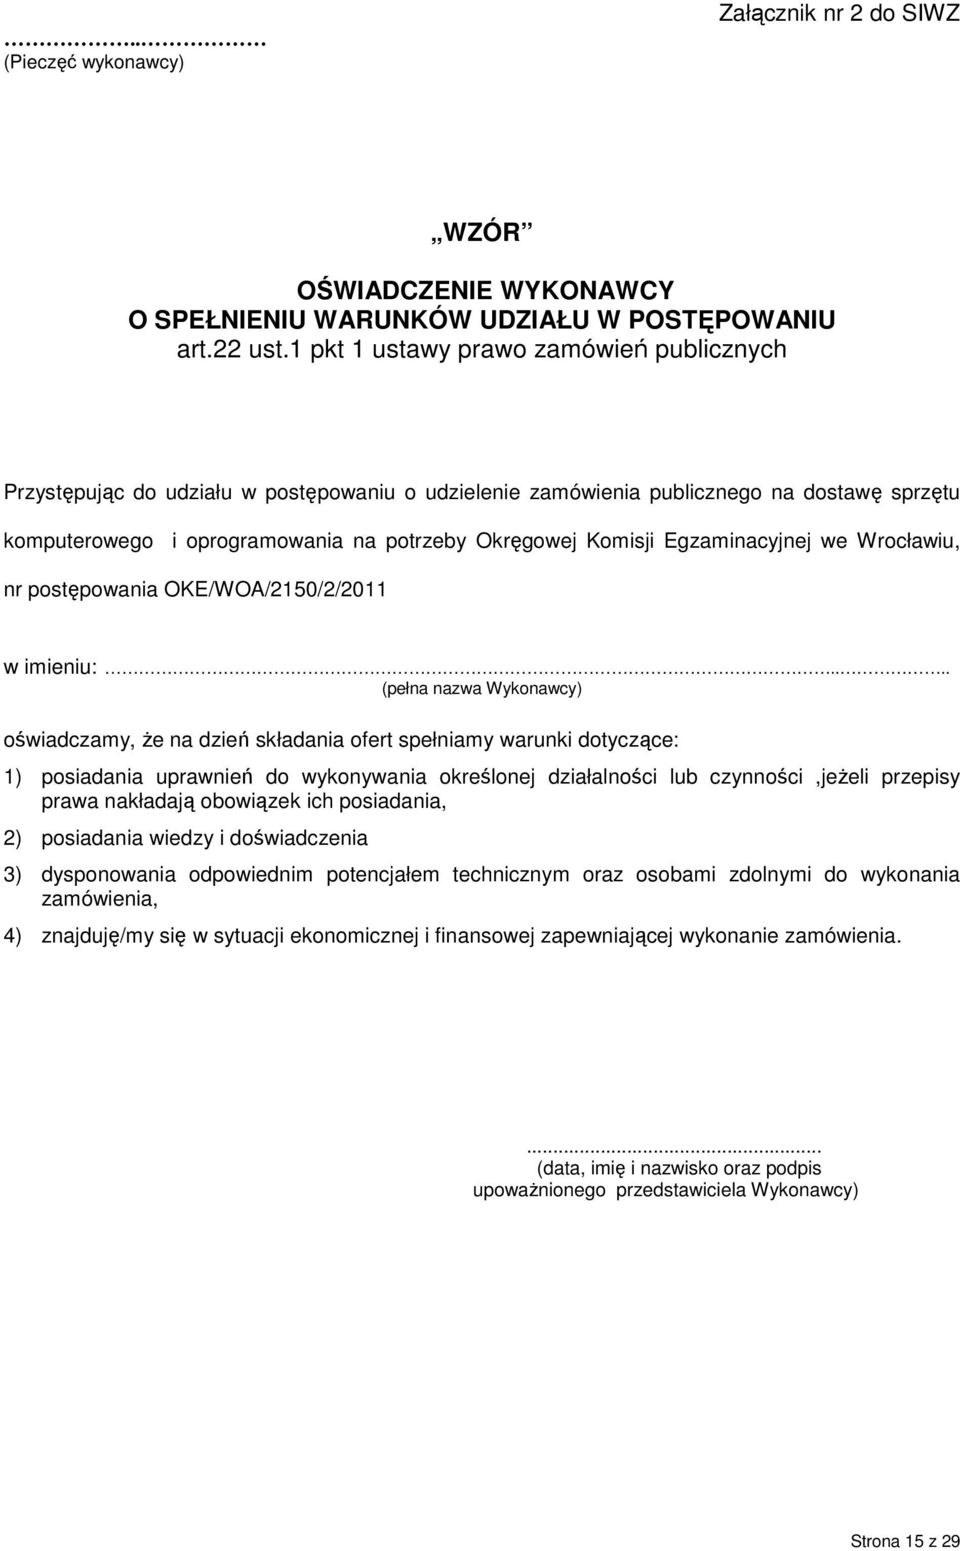 Egzaminacyjnej we Wrocławiu, nr postępowania OKE/WOA/2150/2/2011 w imieniu:.